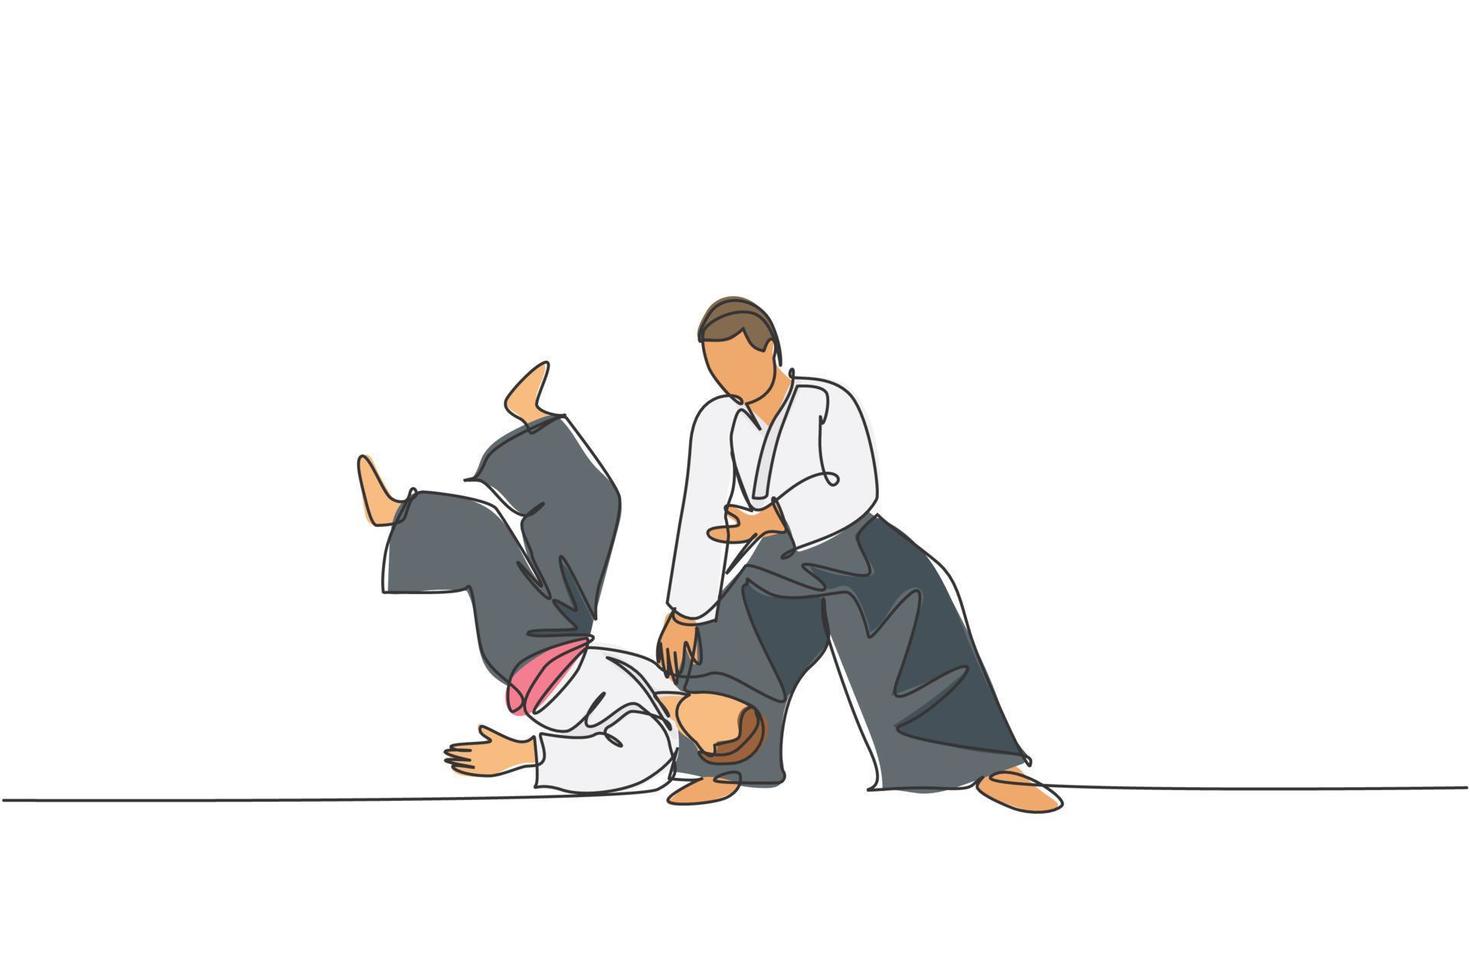 enkele doorlopende lijntekening van twee jonge sportieve mannen die kimono-oefeningen dragen die in aikido-vechttechniek gooien. Japans krijgskunstconcept. trendy één lijn tekenen ontwerp vectorillustratie vector